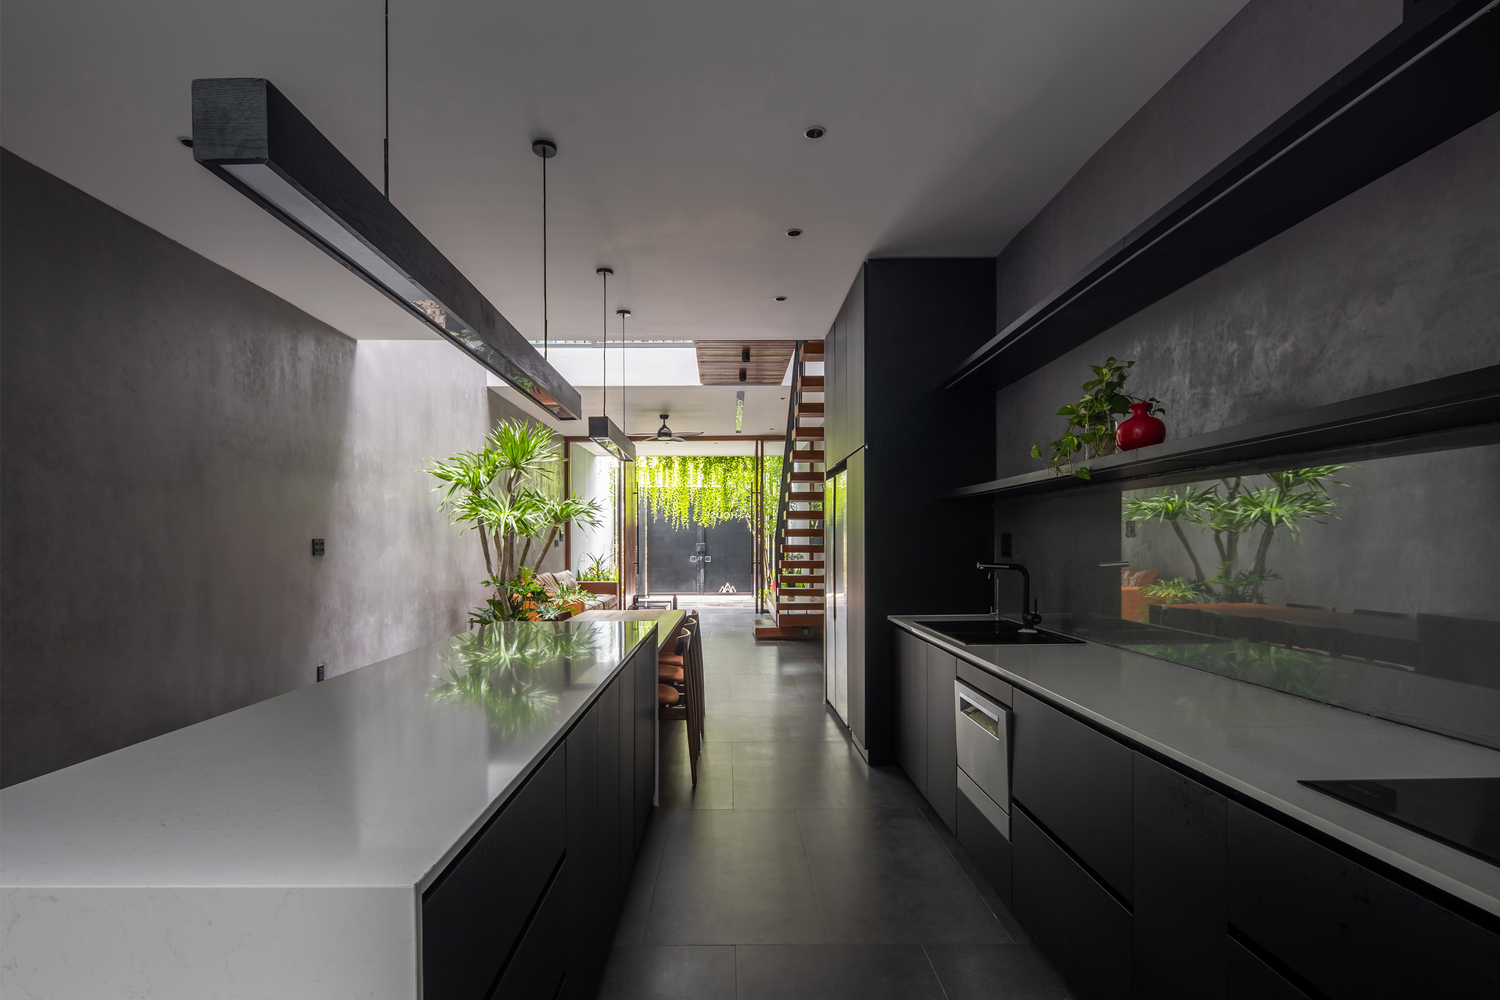 Phòng bếp liên thông với phòng khách cũng được thiết kế theo tiêu chí tối giản, tạo nên một lối đi thông suốt kết kết 2 khu vực chức năng riêng biệt với nhau.